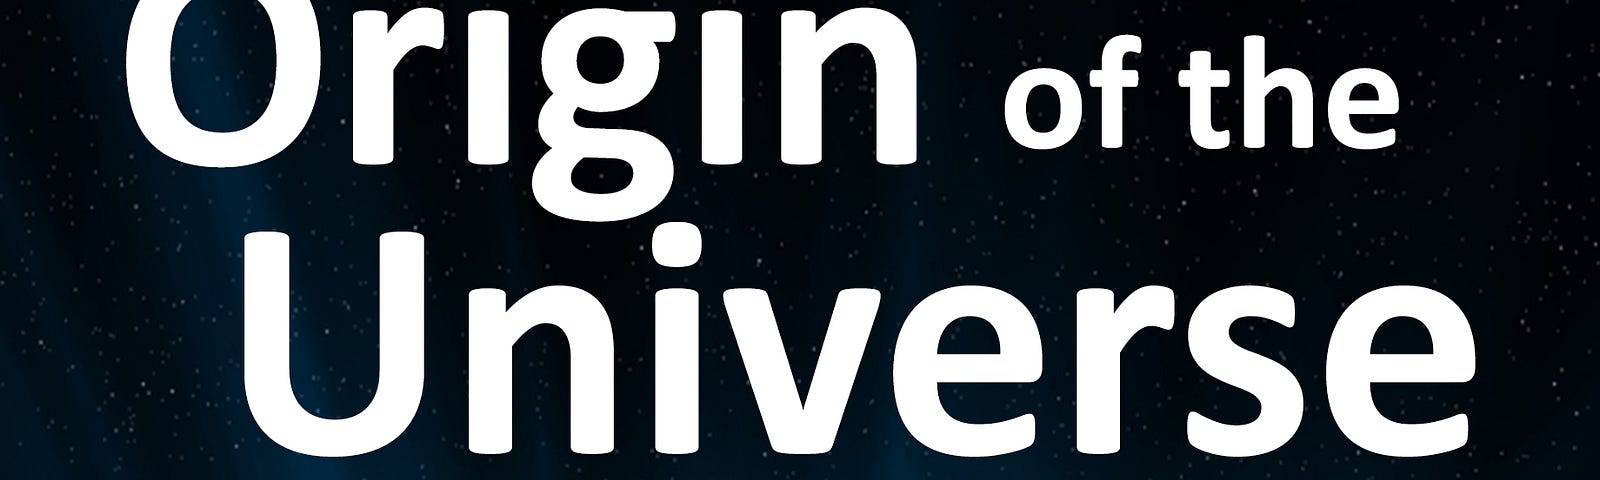 Origin of the Universe book cover.